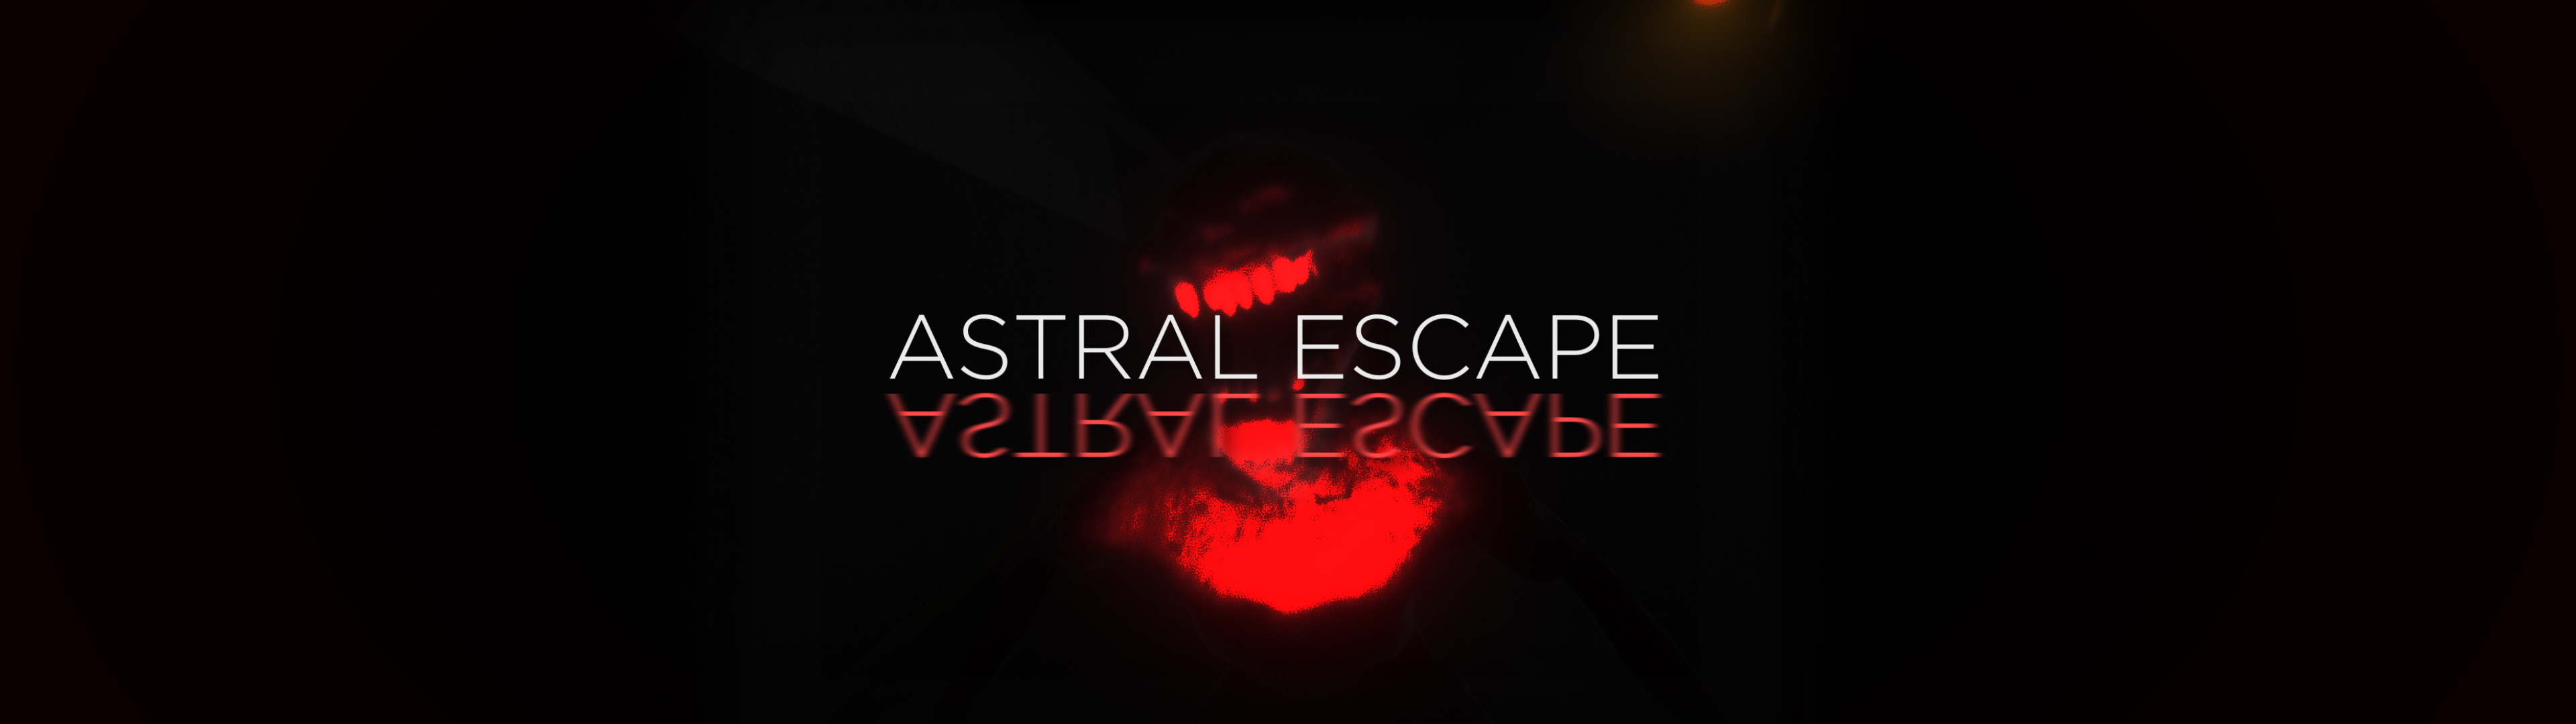 Astral Escape